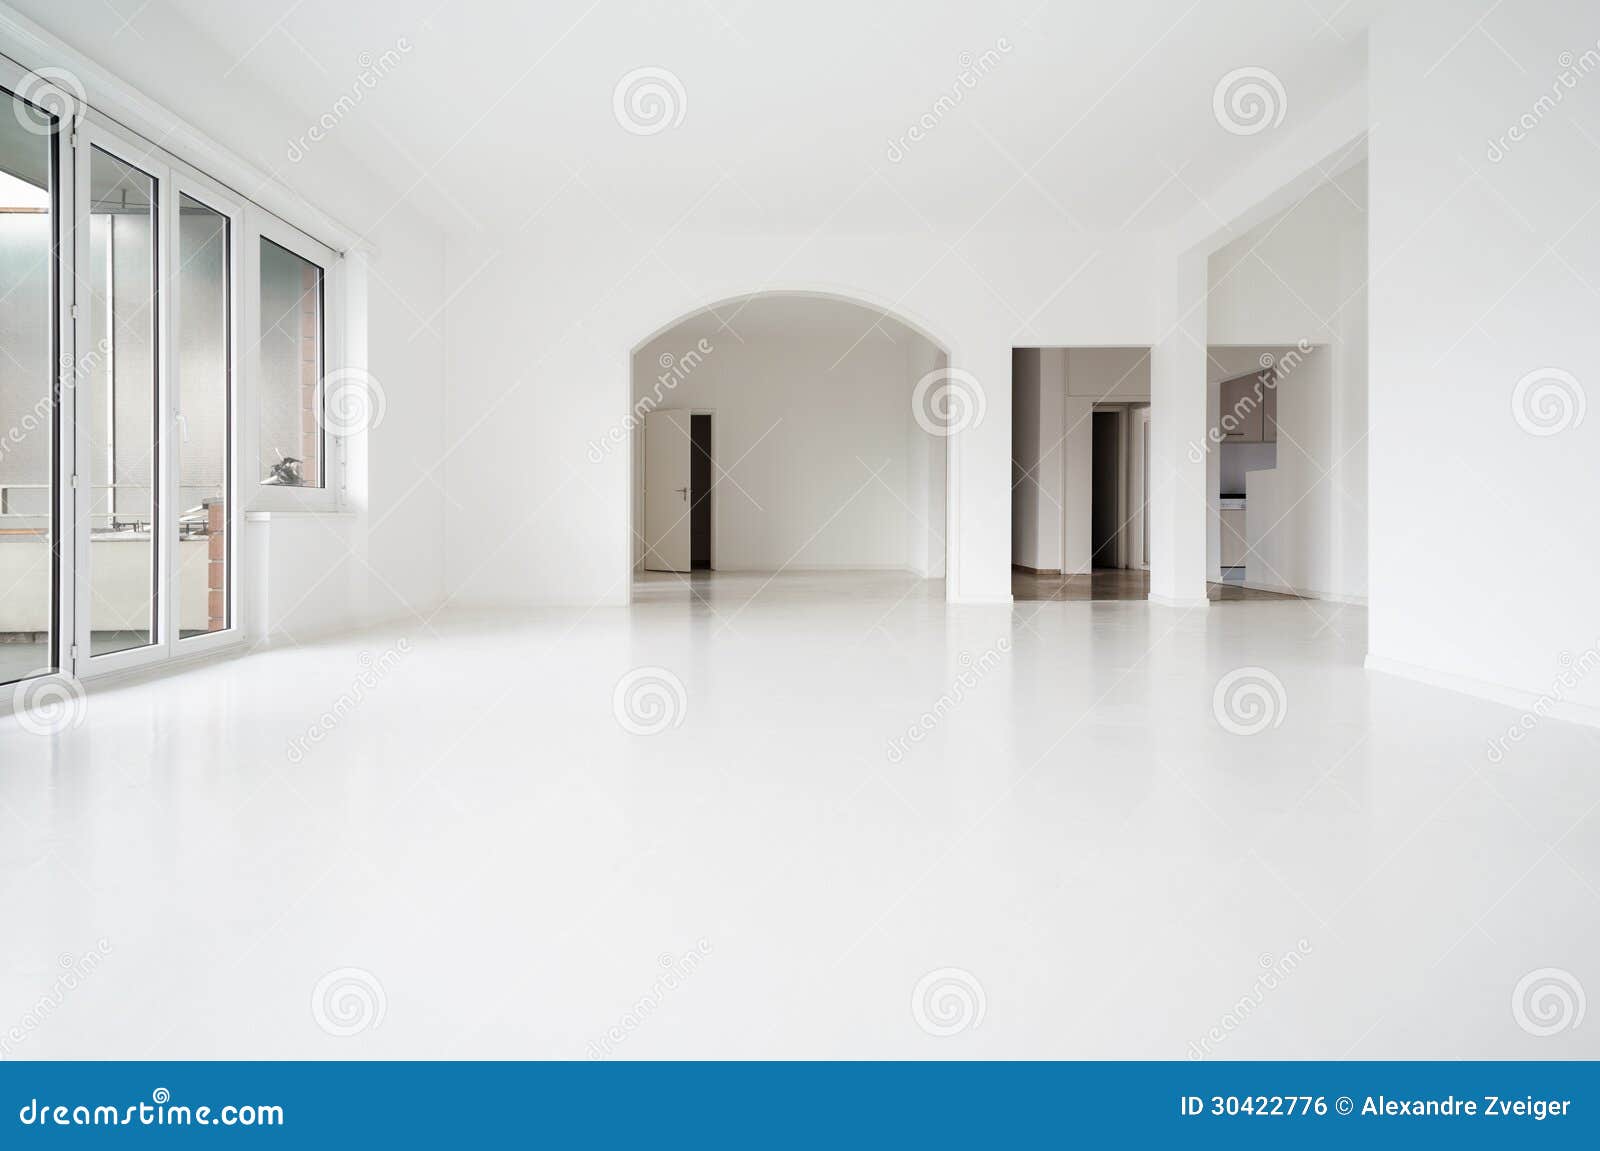 white apartment interior